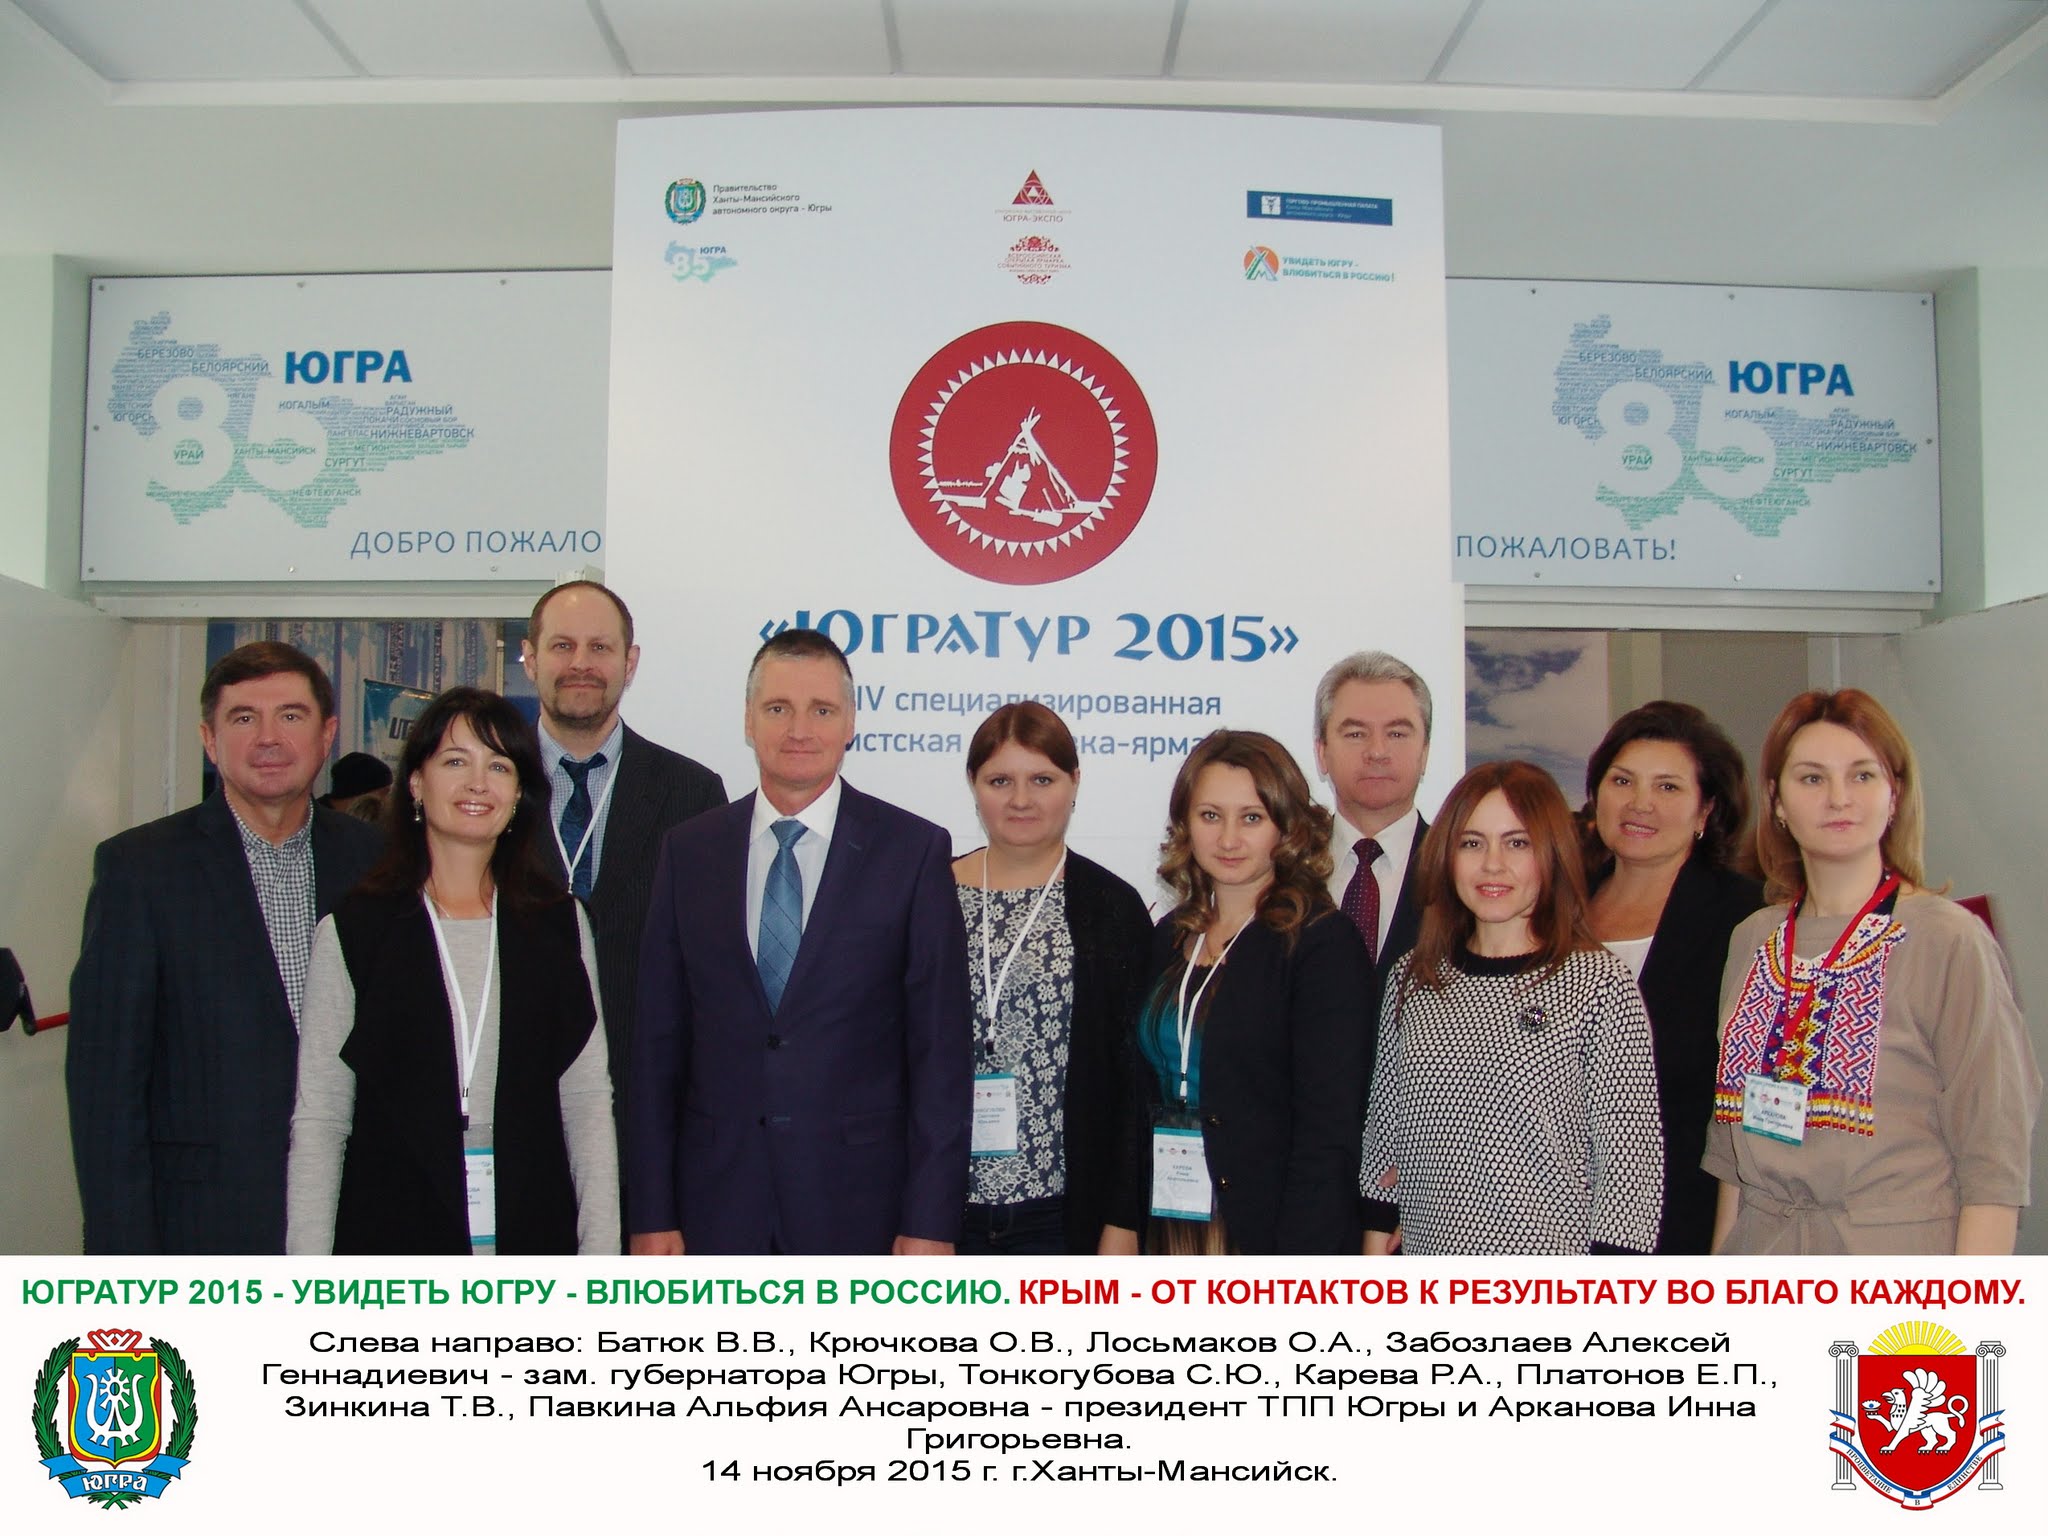 Компания «Черномор» приняла участие в выставке Югратур &ndash; 2015